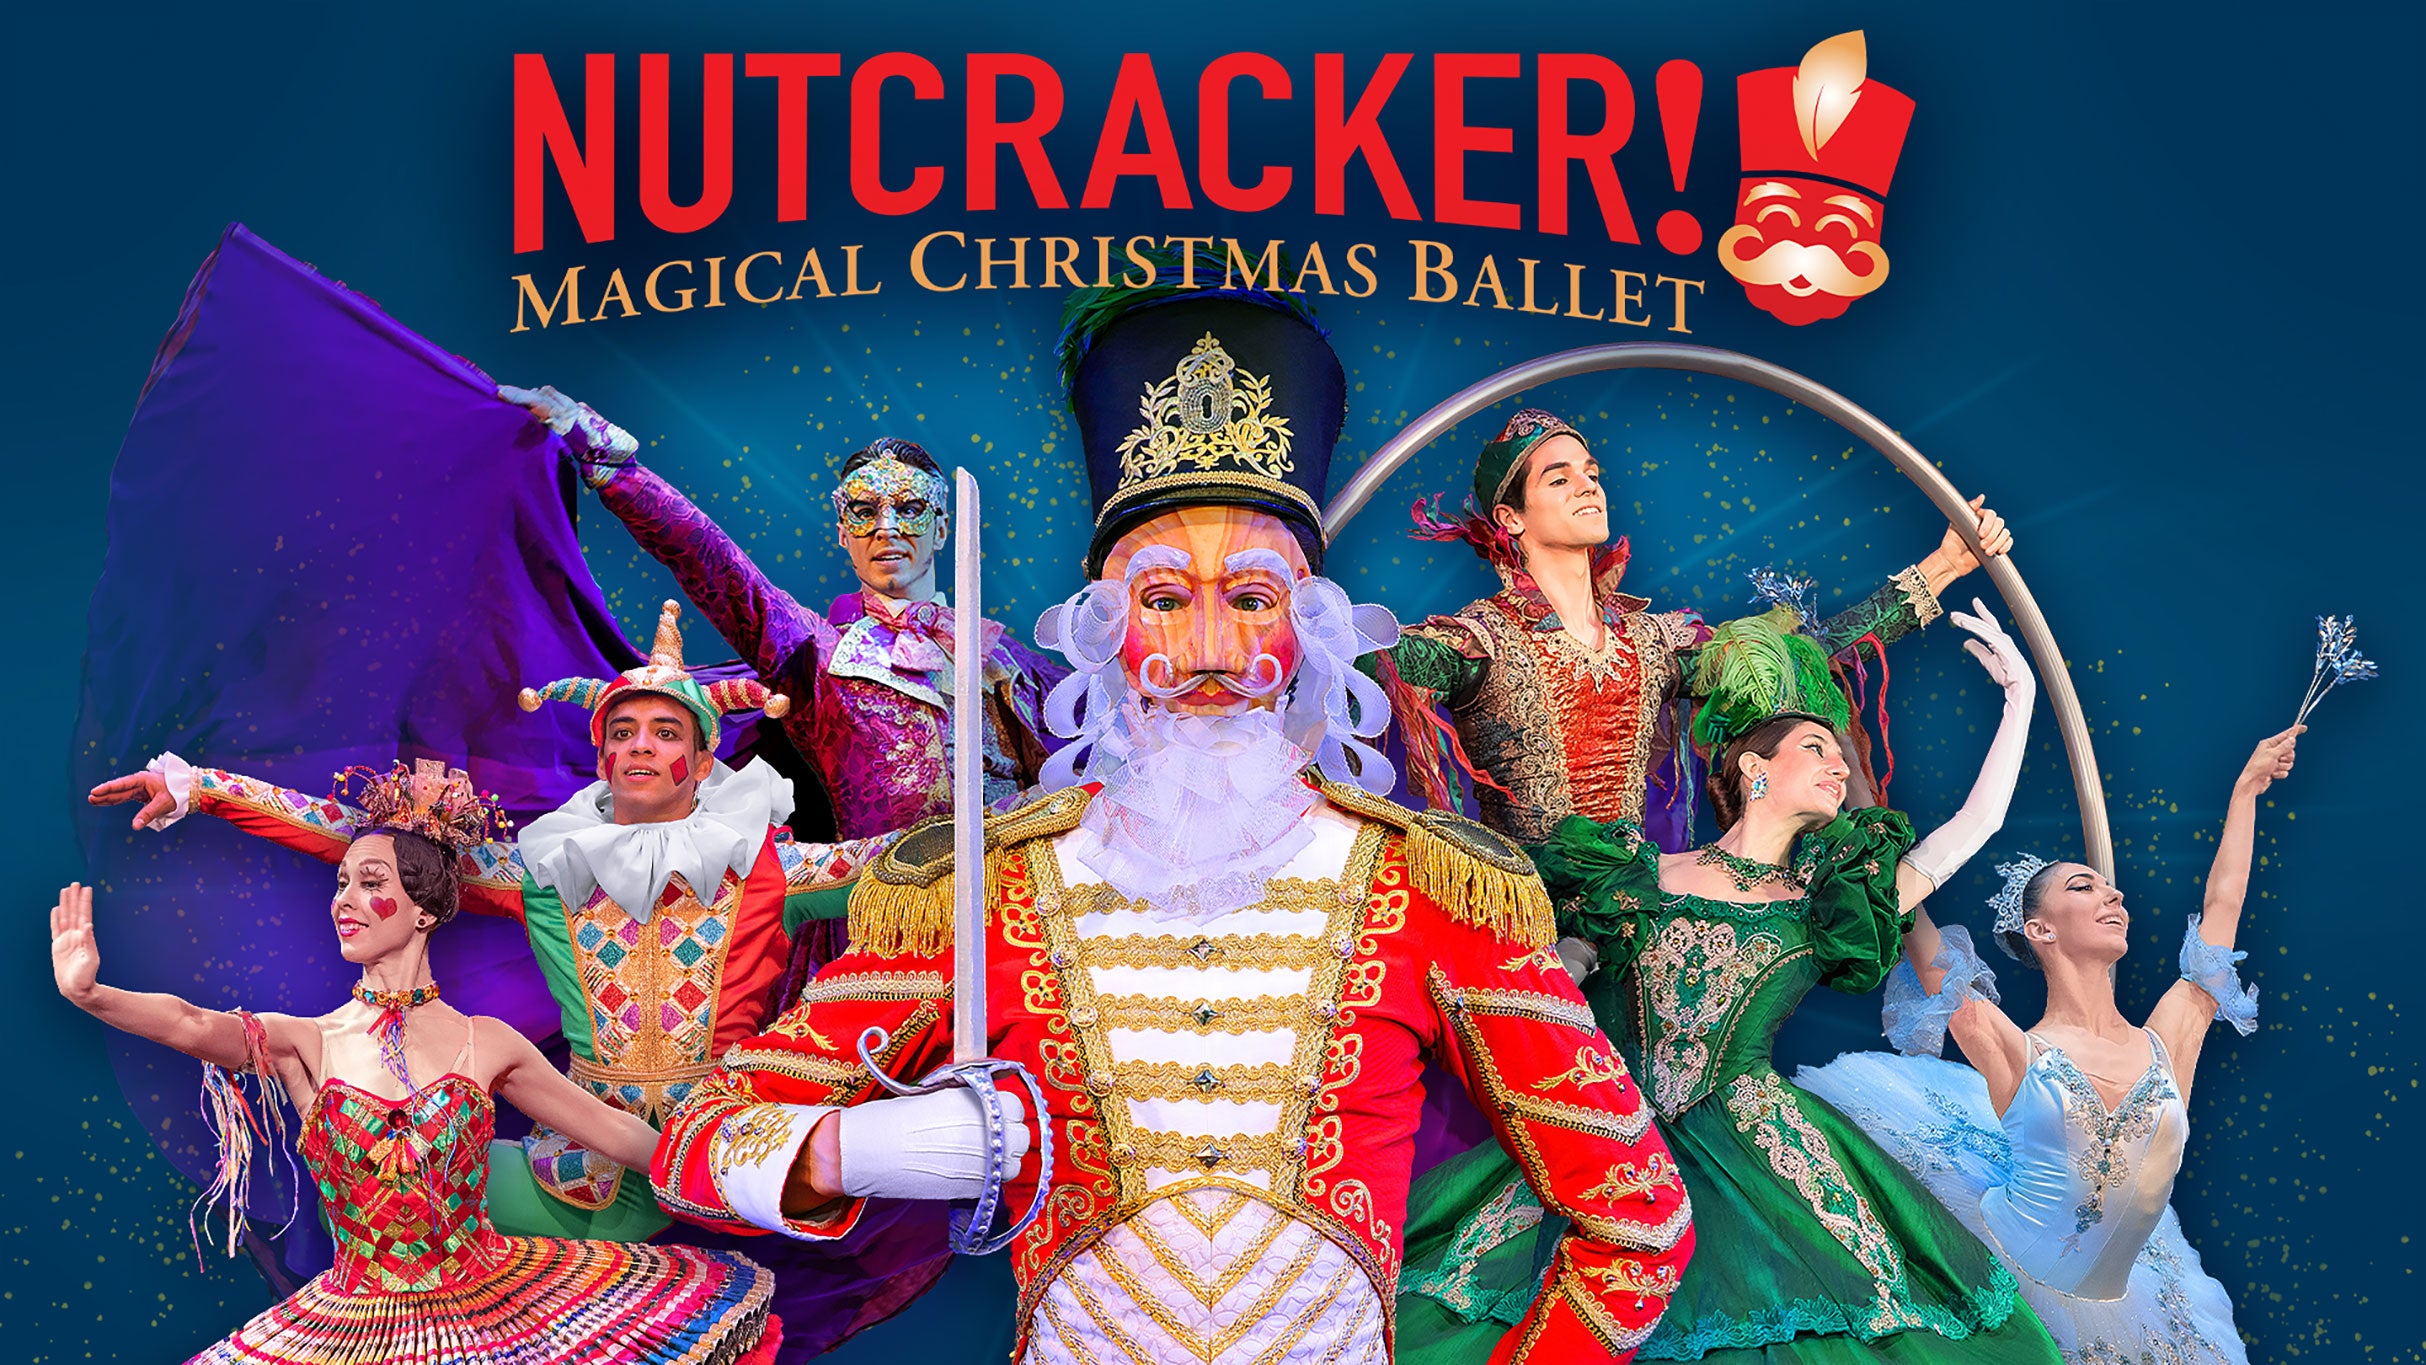 NUTCRACKER! Magical Christmas Ballet at Robinson Center